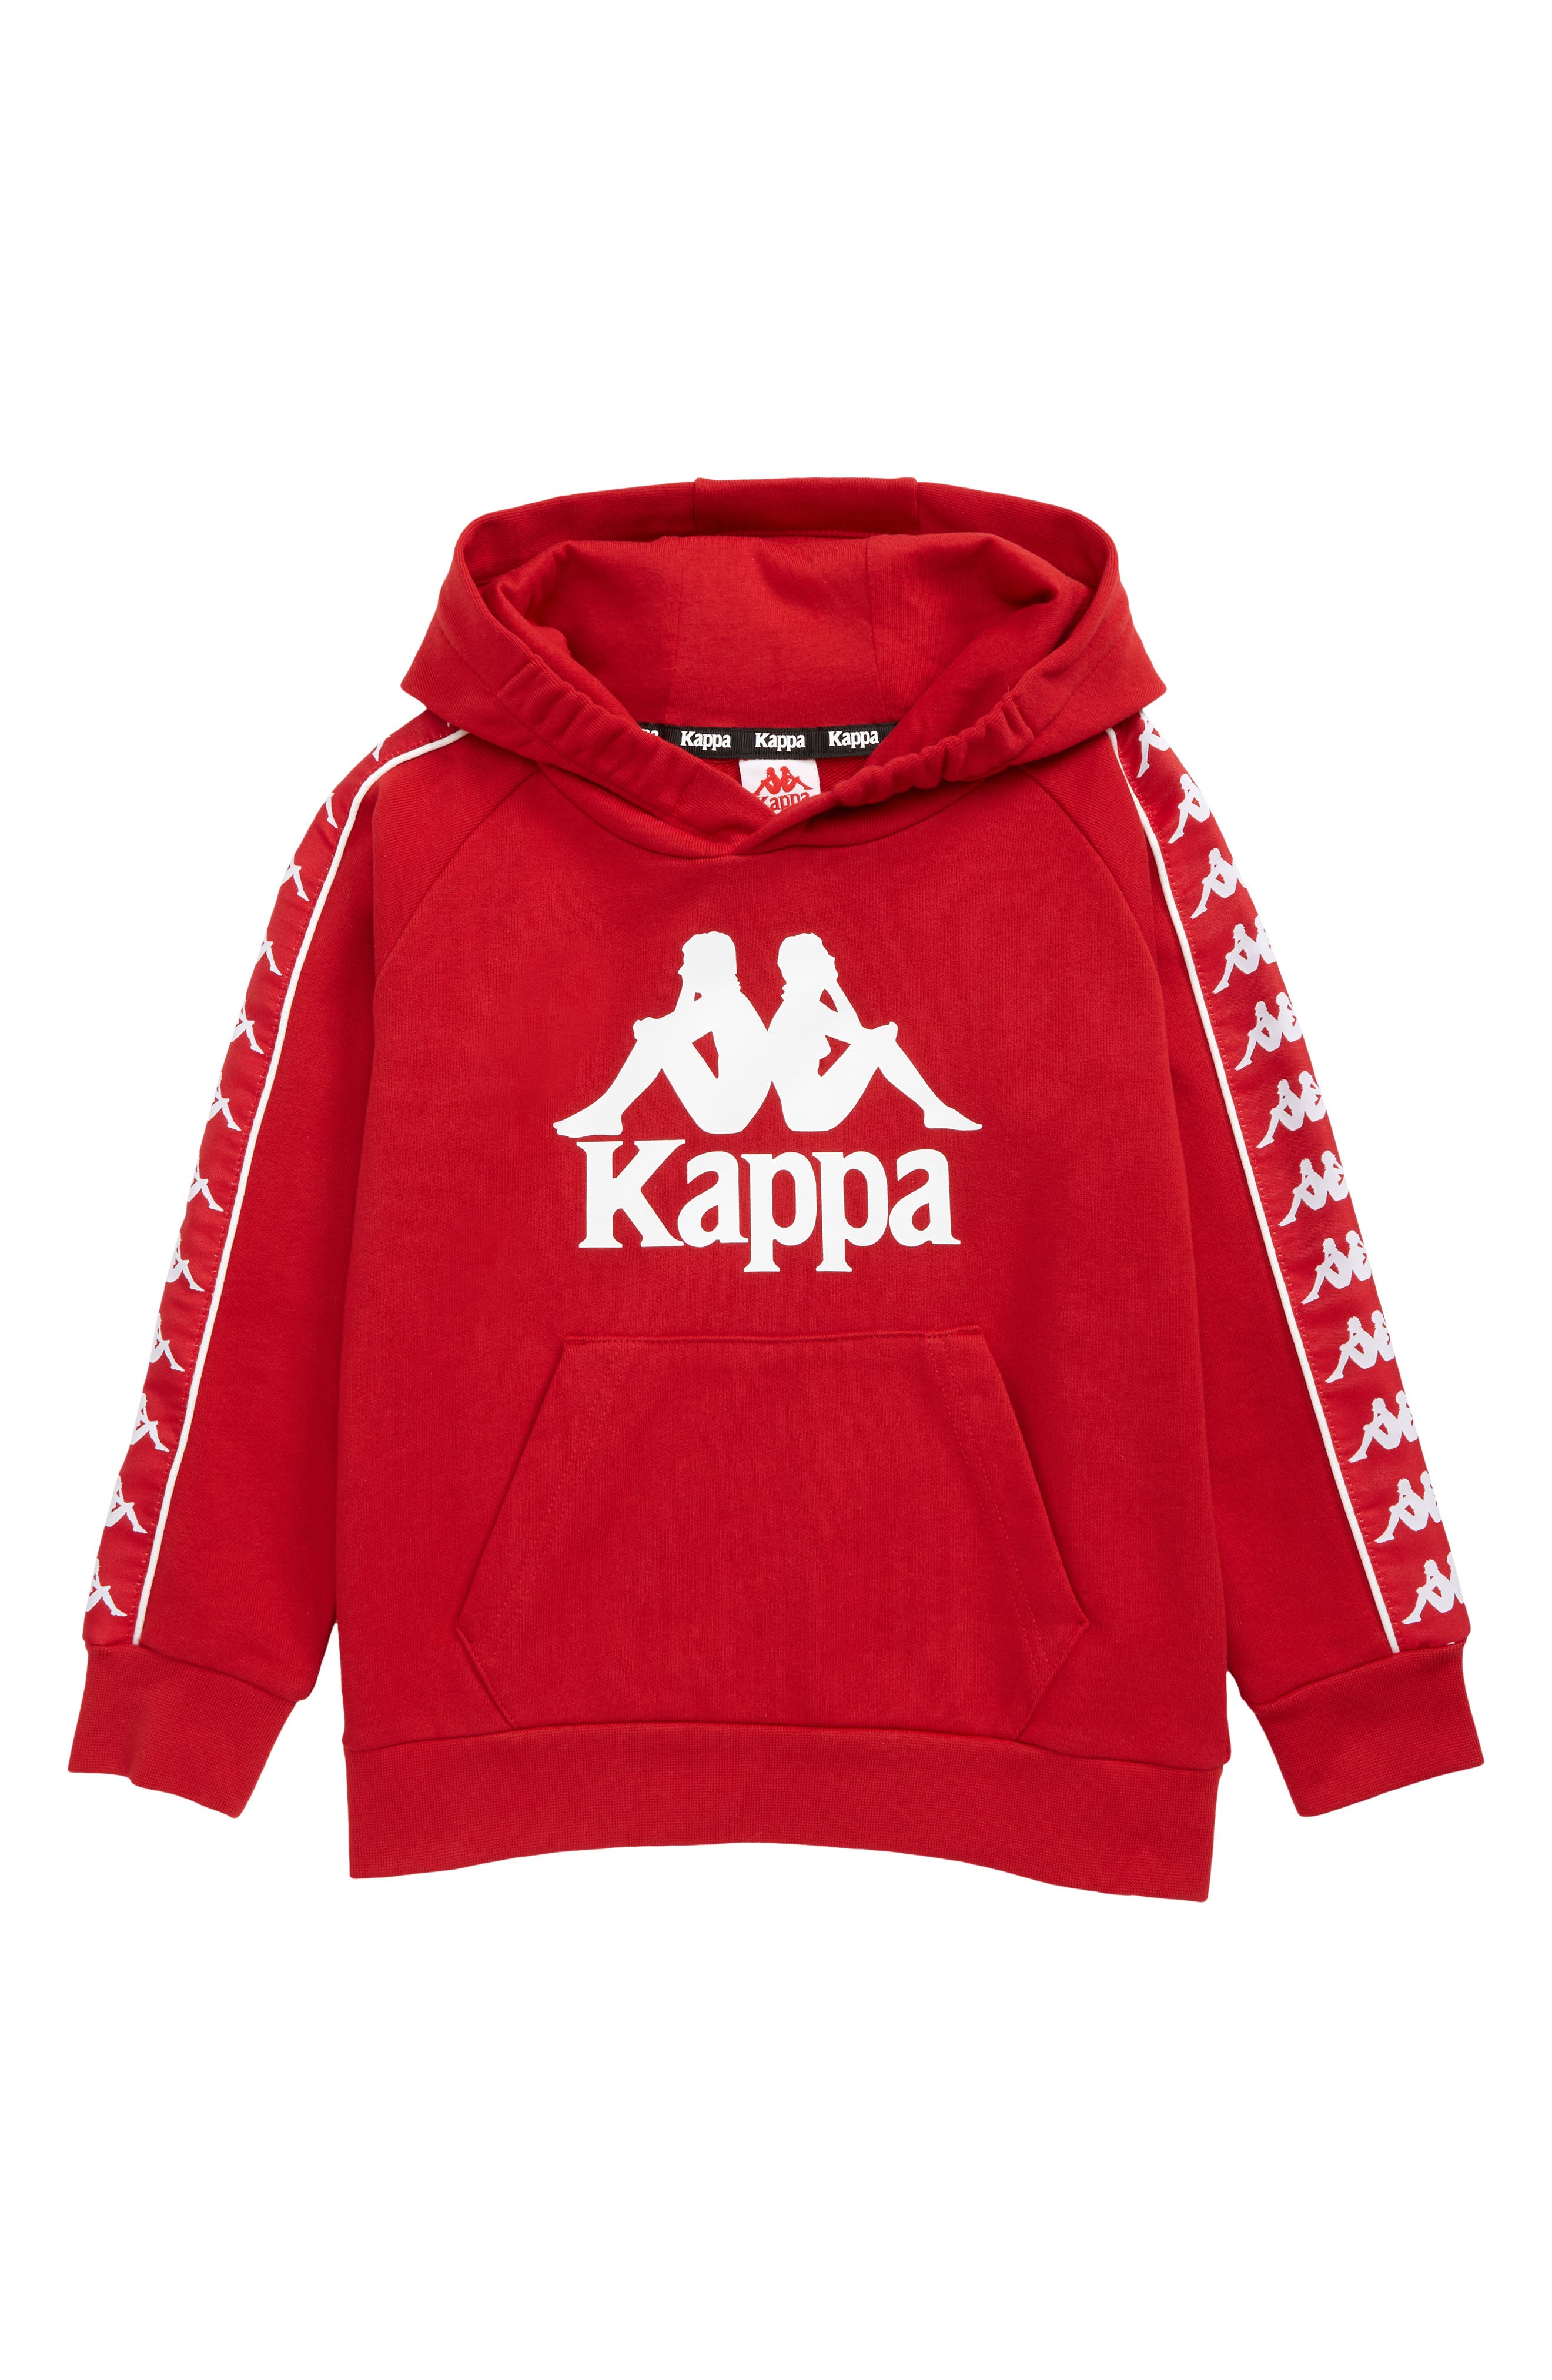 Kappa Kappa Childs Hoodie Size Large 